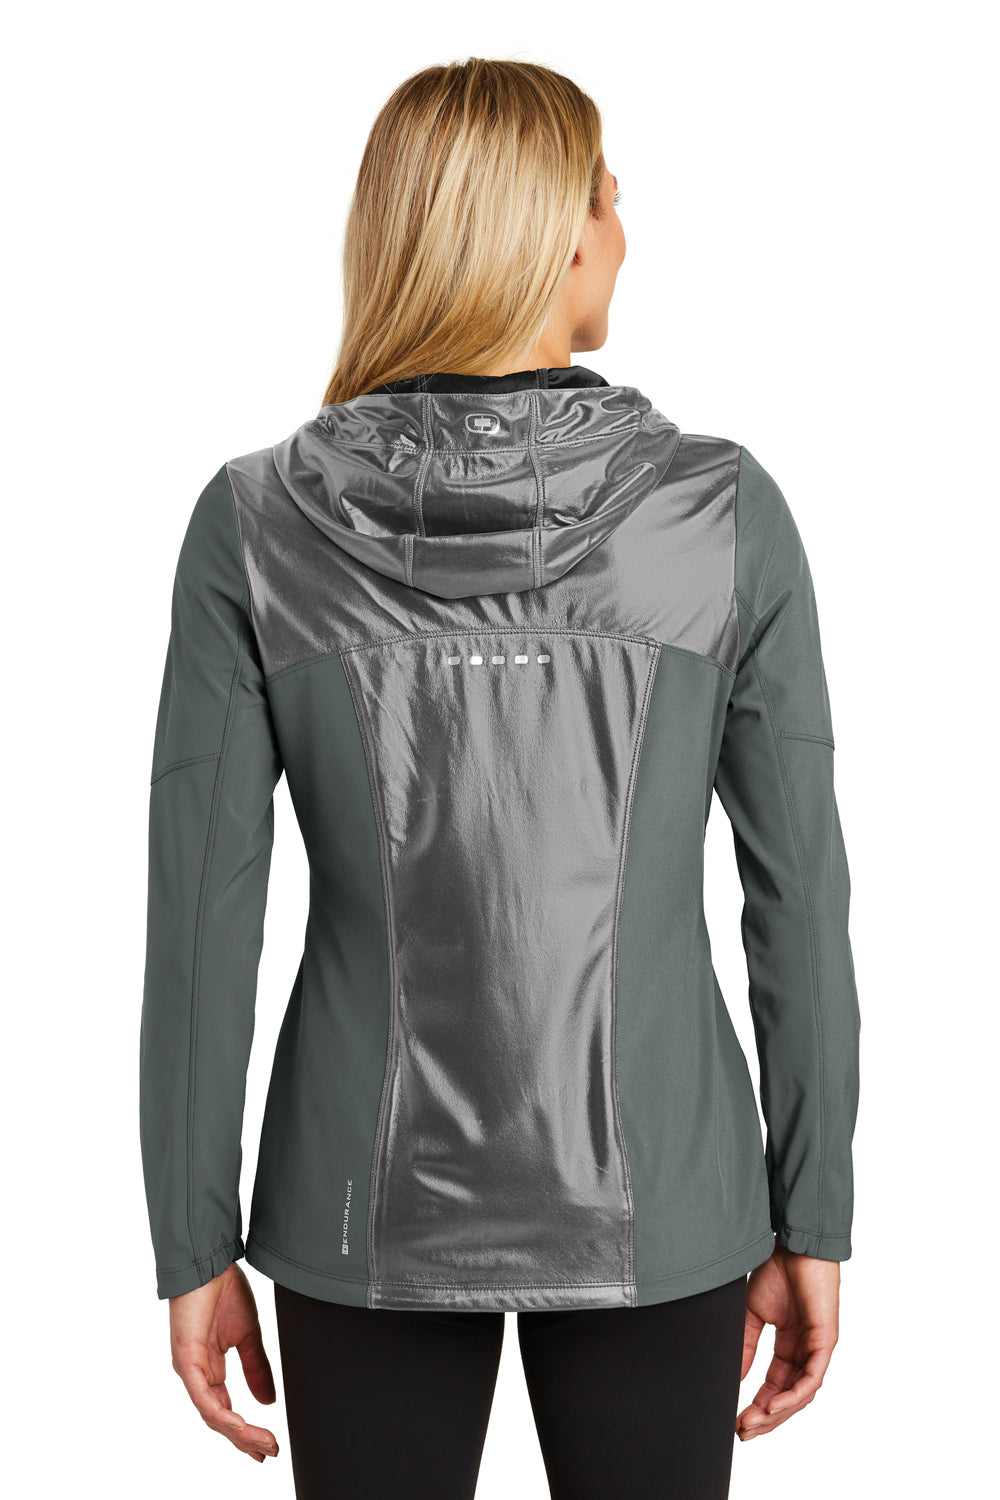 Ogio LOE723 Womens Endurance Liquid Wind & Water Resistant Full Zip Hooded Jacket Diesel Grey Back